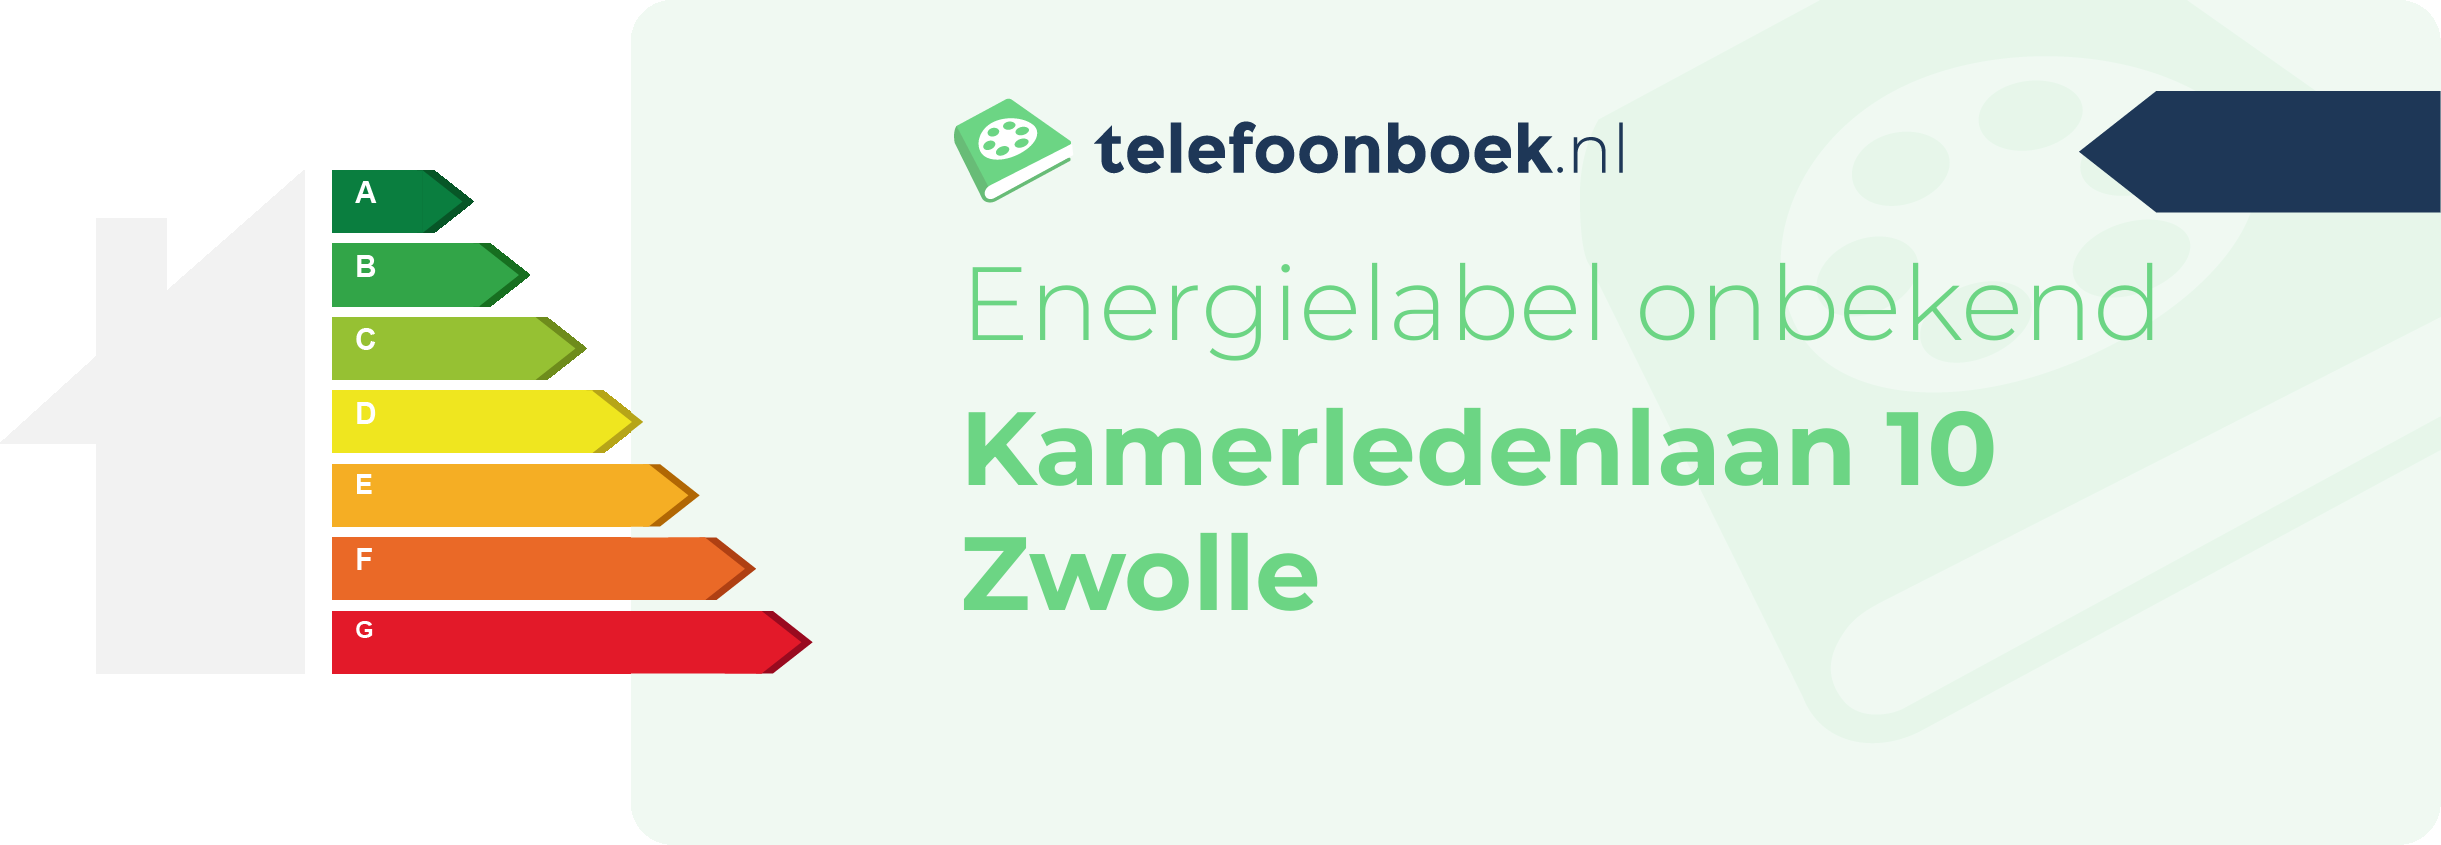 Energielabel Kamerledenlaan 10 Zwolle